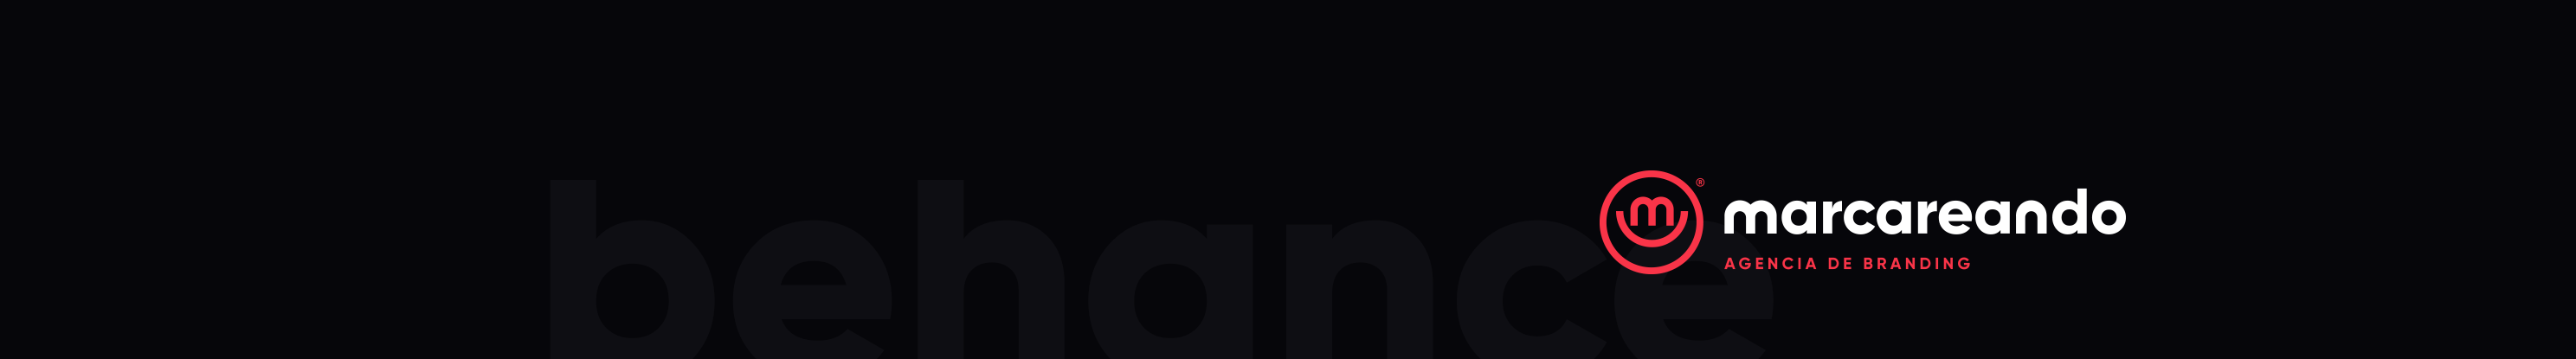 Marcareando ®'s profile banner